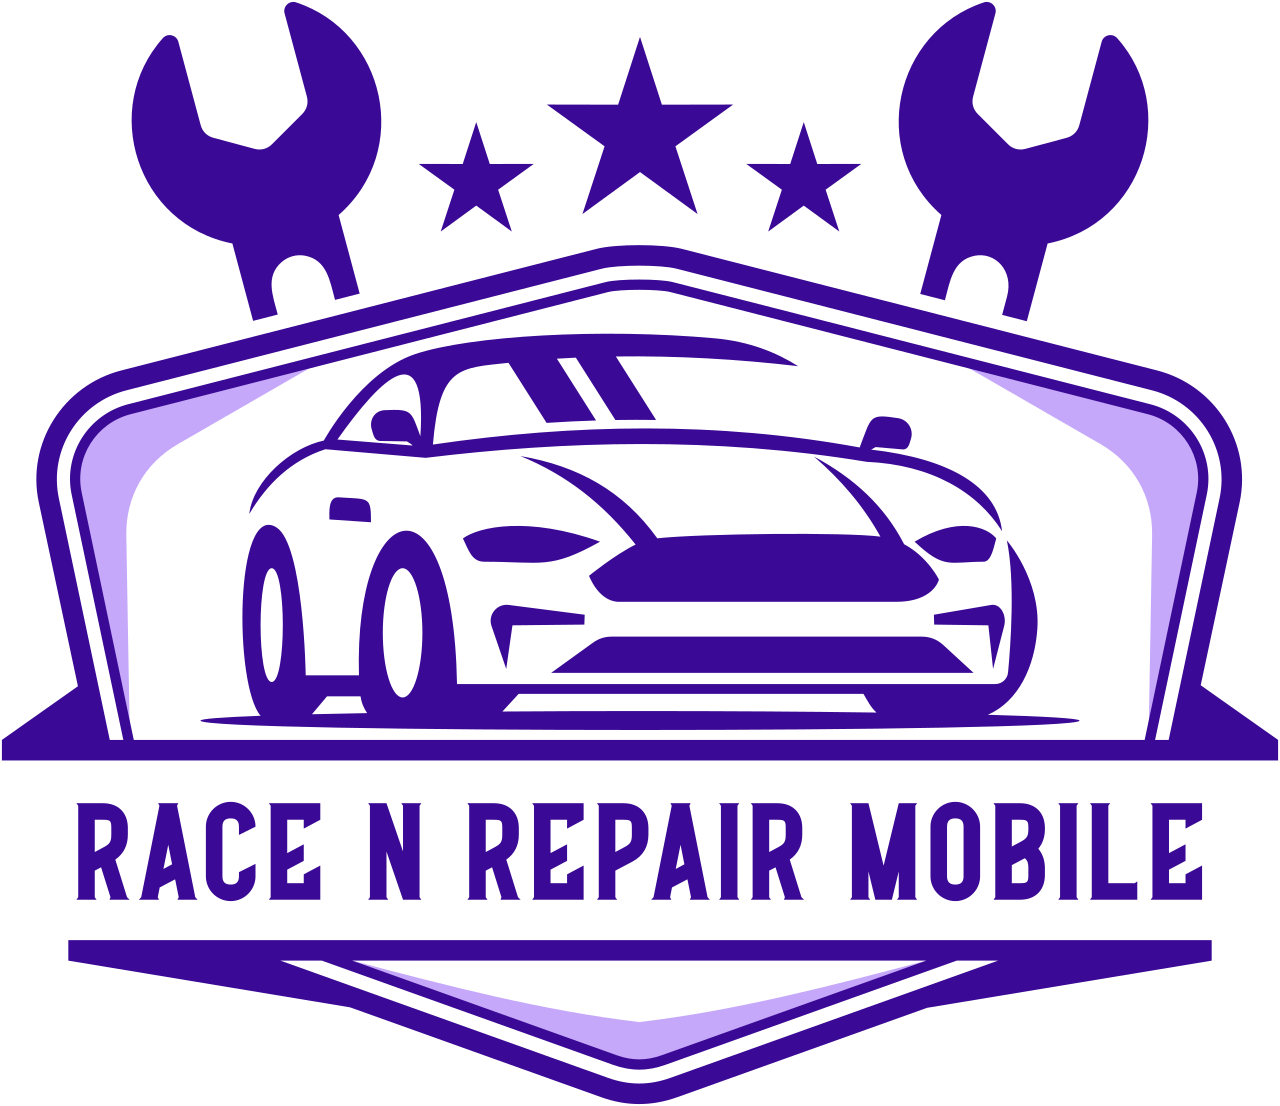 Race N Repair Mobile's logo